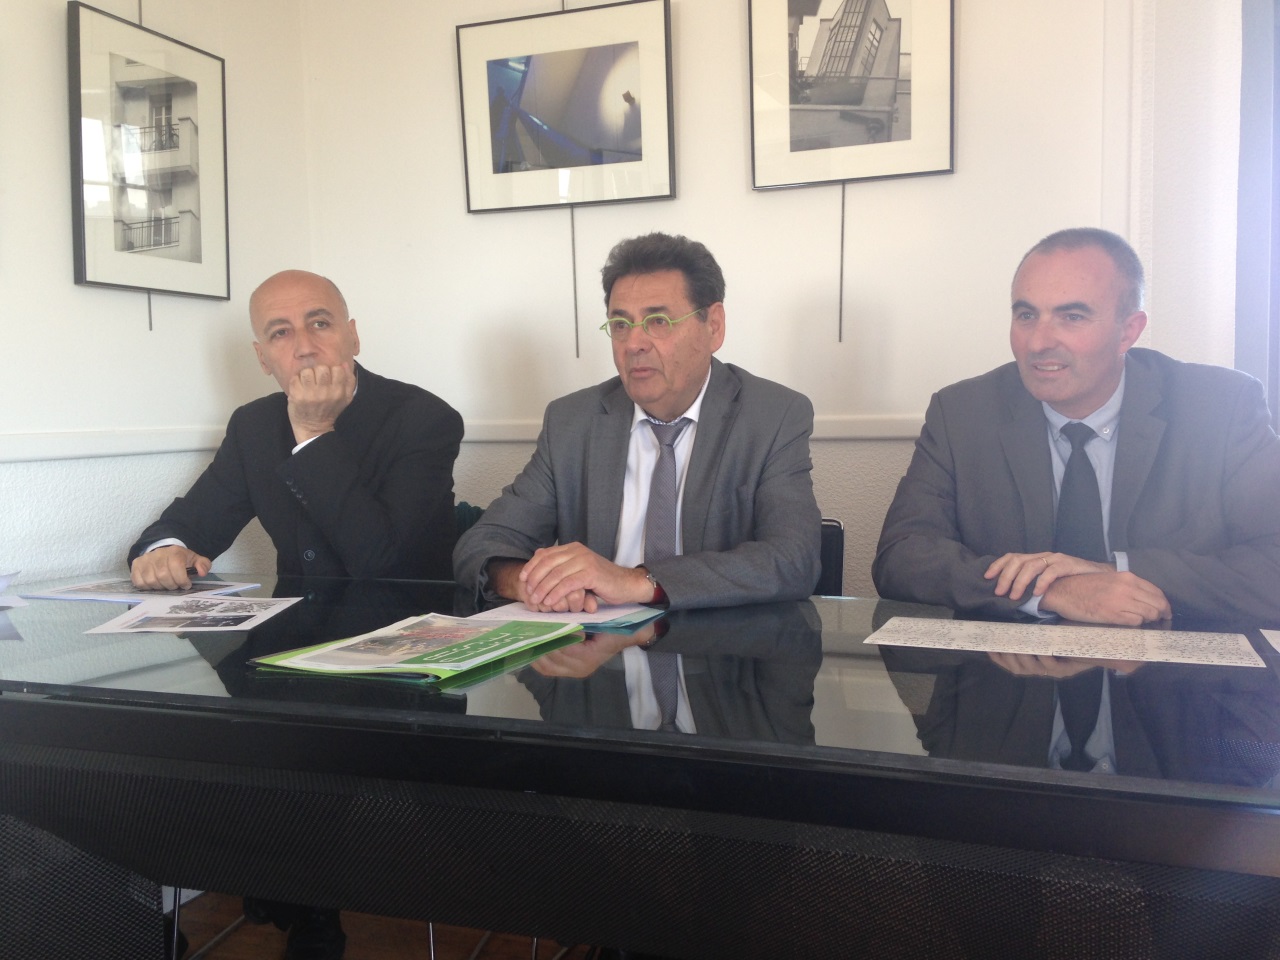 Conférence de presse sur le projet urbain Gratte-Ciel Centre Ville, Nicolas Michelin, Jean-Paul Bret et Michel Le Faou (de gauche à droite) - LyonMag